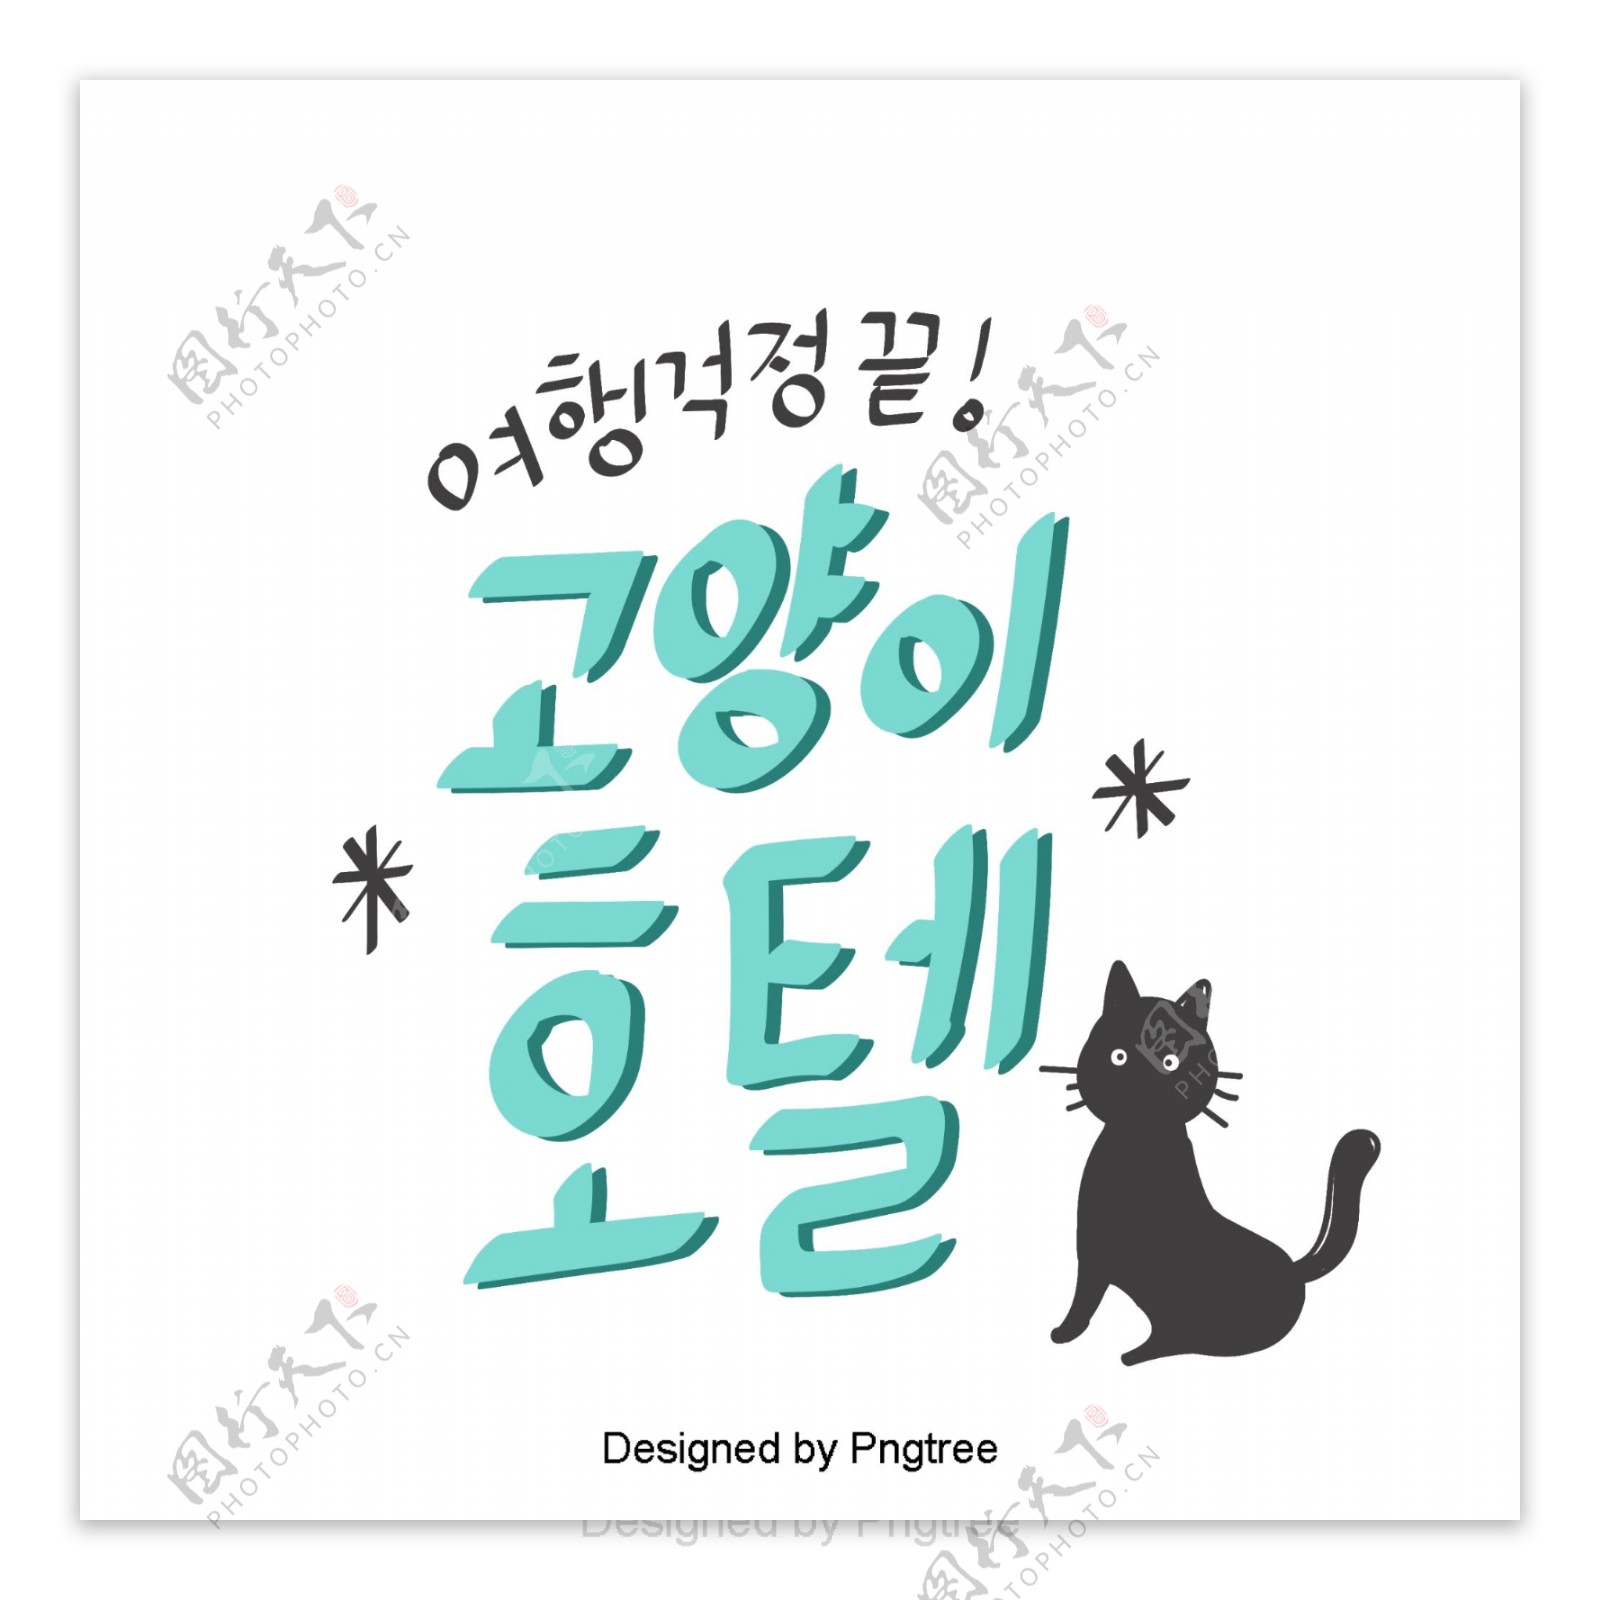 韩国字体浅蓝色猫卡通有趣可爱贴纸材料元素